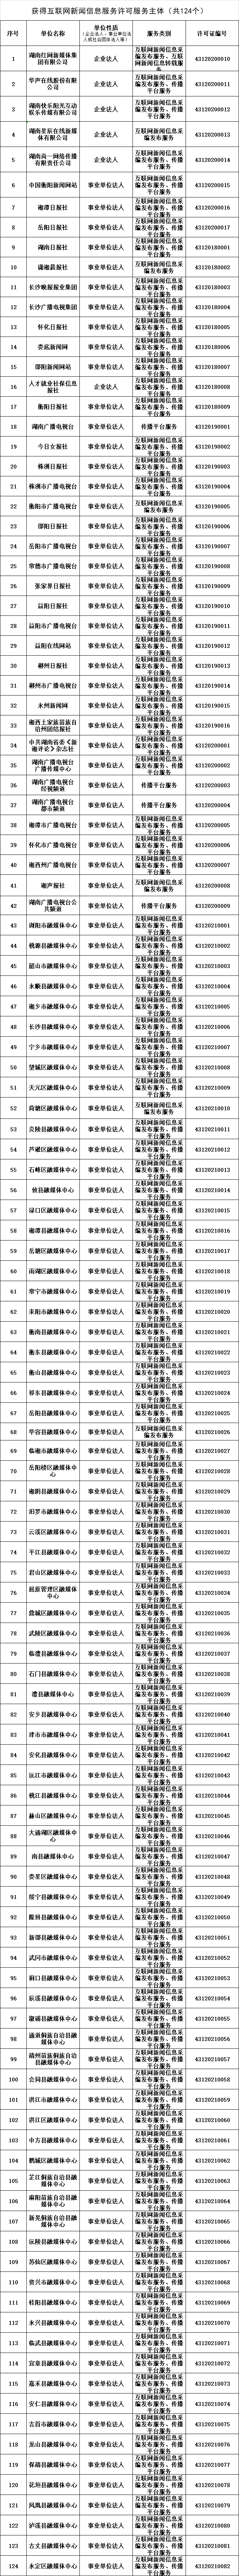 公告丨湖南省互联网信息办公室公布新闻信息服务许可发证单位